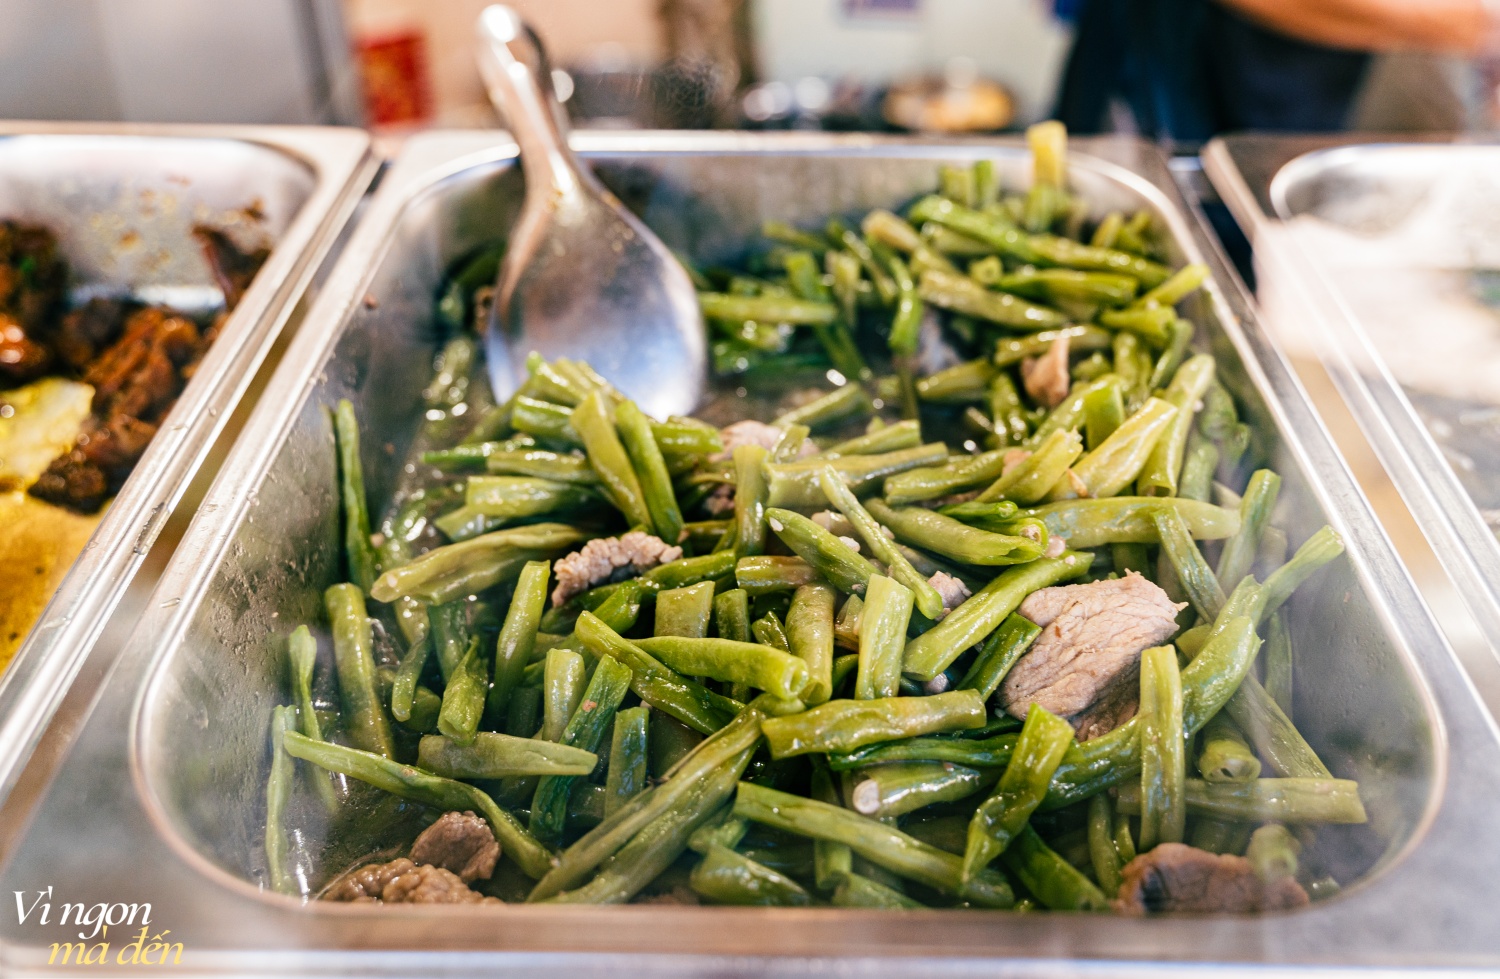 Đi ăn cơm bình dân kiểu người Hoa: Cửa tiệm bán 3 đời mỗi ngày nấu hơn 30 món cầu kỳ, đông khách đến nỗi không dám mở trên ứng dụng giao đồ ăn- Ảnh 18.